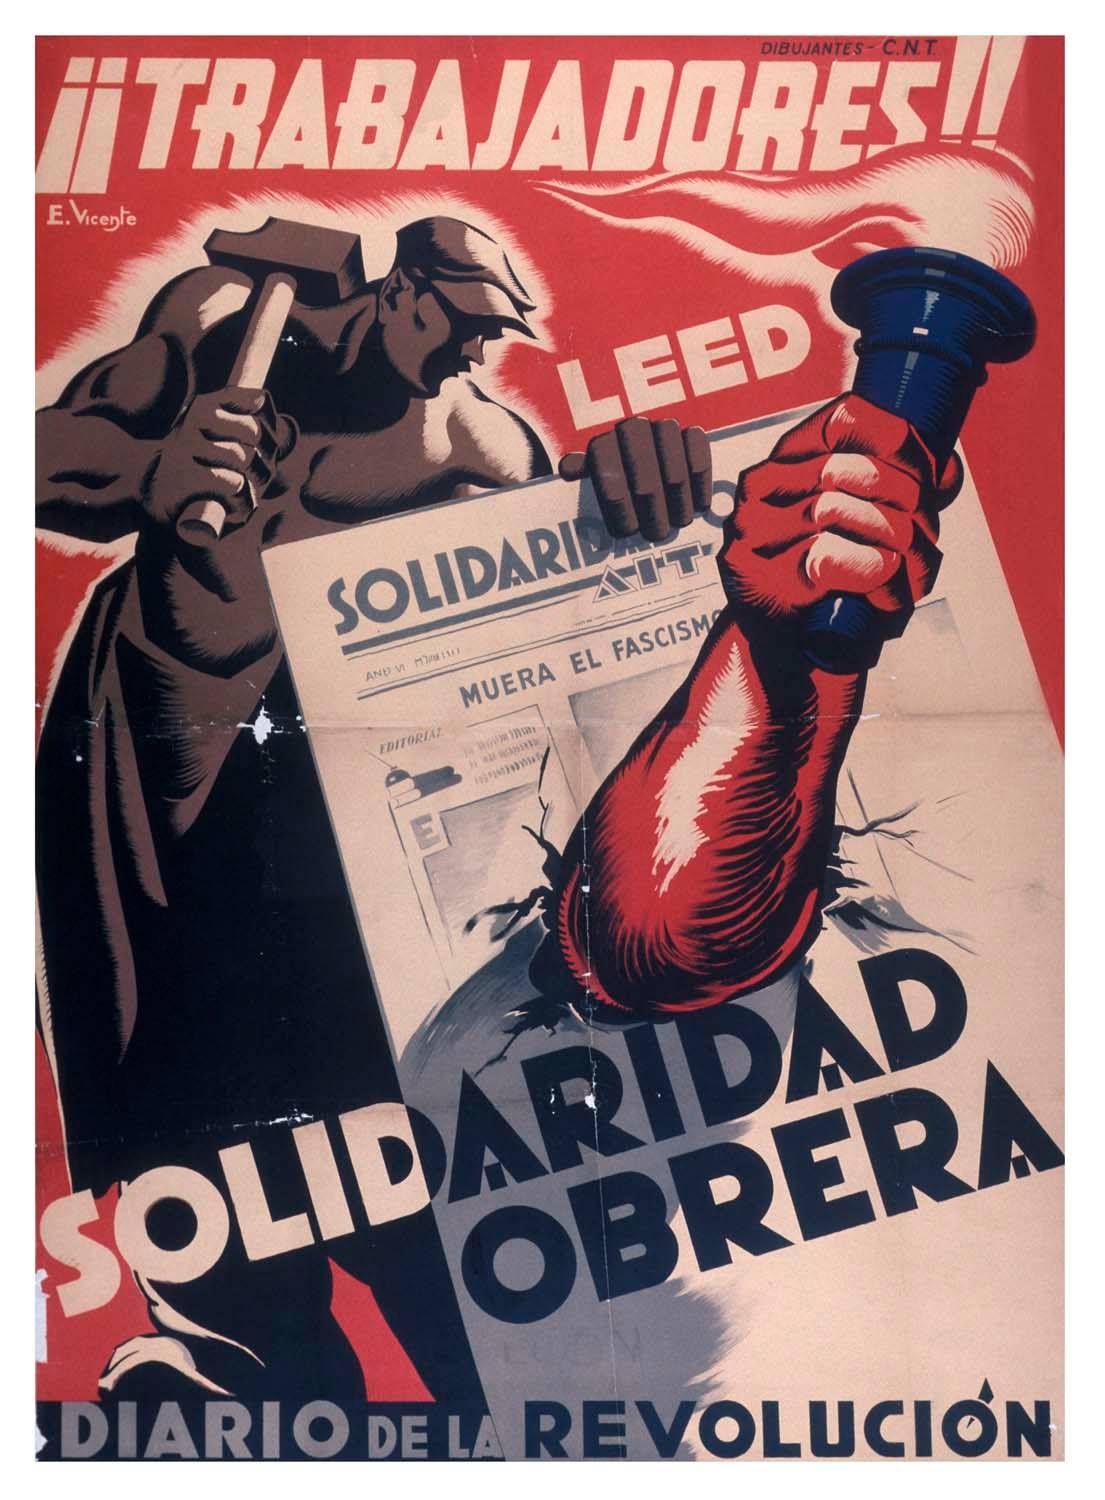 Σαν σήμερα θα κυκλοφορήσει το πρώτο τεύχος της αναρχικής εφημερίδας Solidaridad Obrera. Σαν σήμερα, στις 19 Οκτωβρίου του 1907 [...]